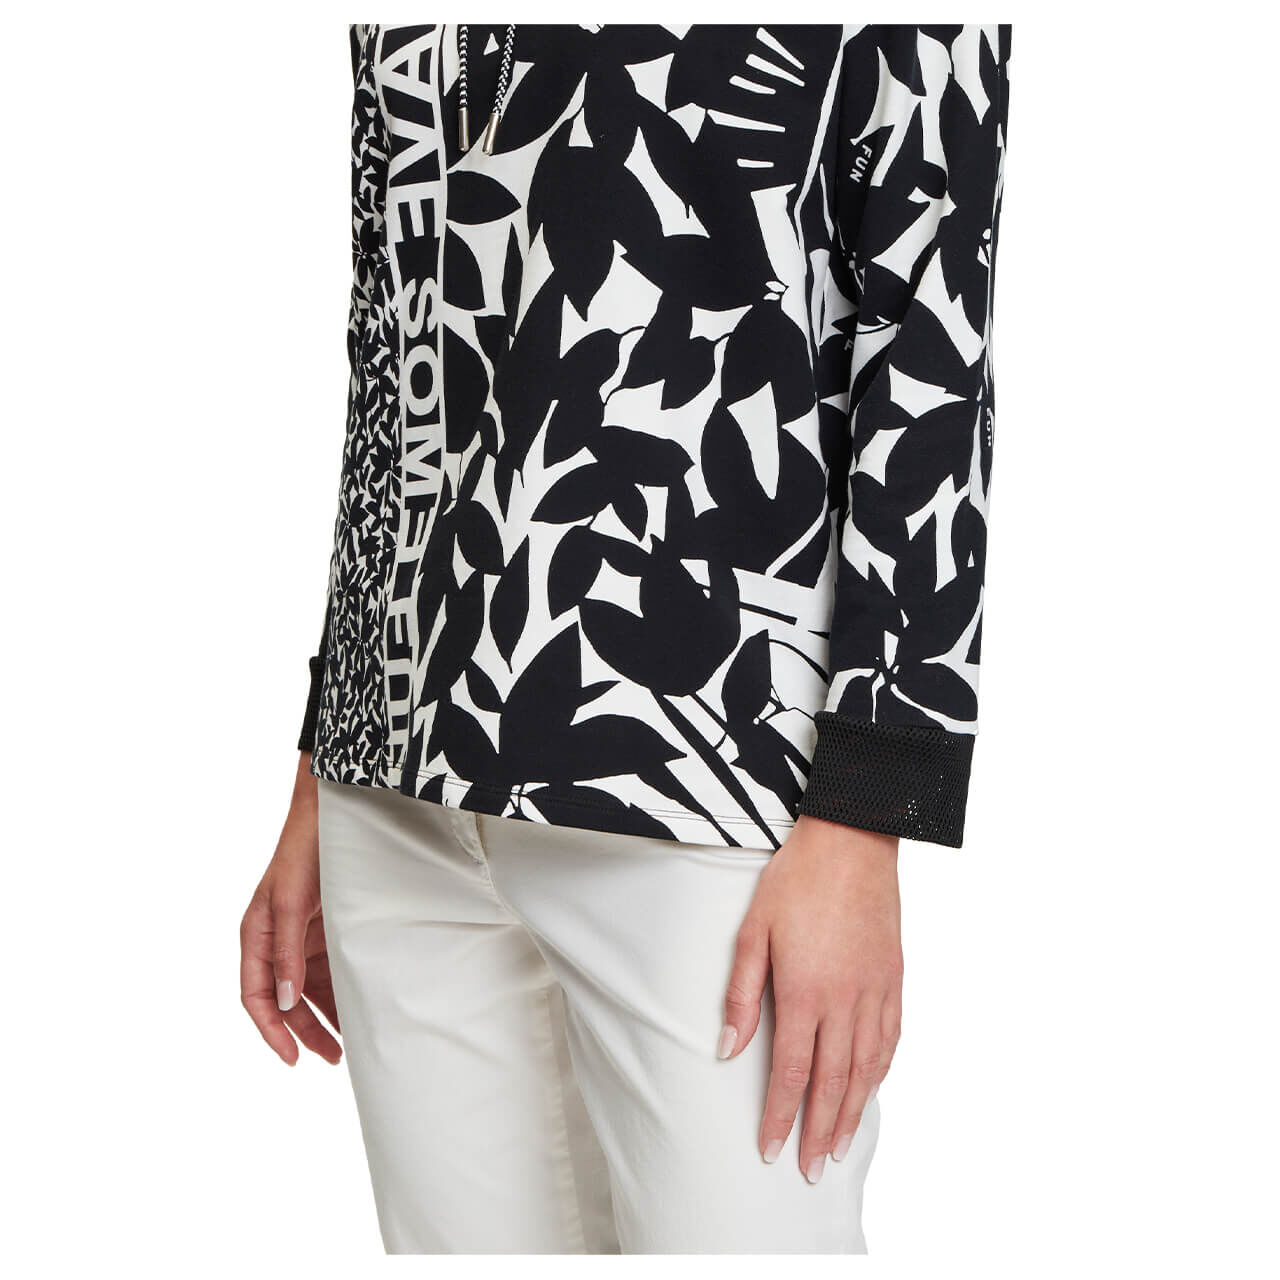 Betty Barclay Hoodie Sweatshirt für Damen in Schwarz-Weiß, FarbNr.: 9812